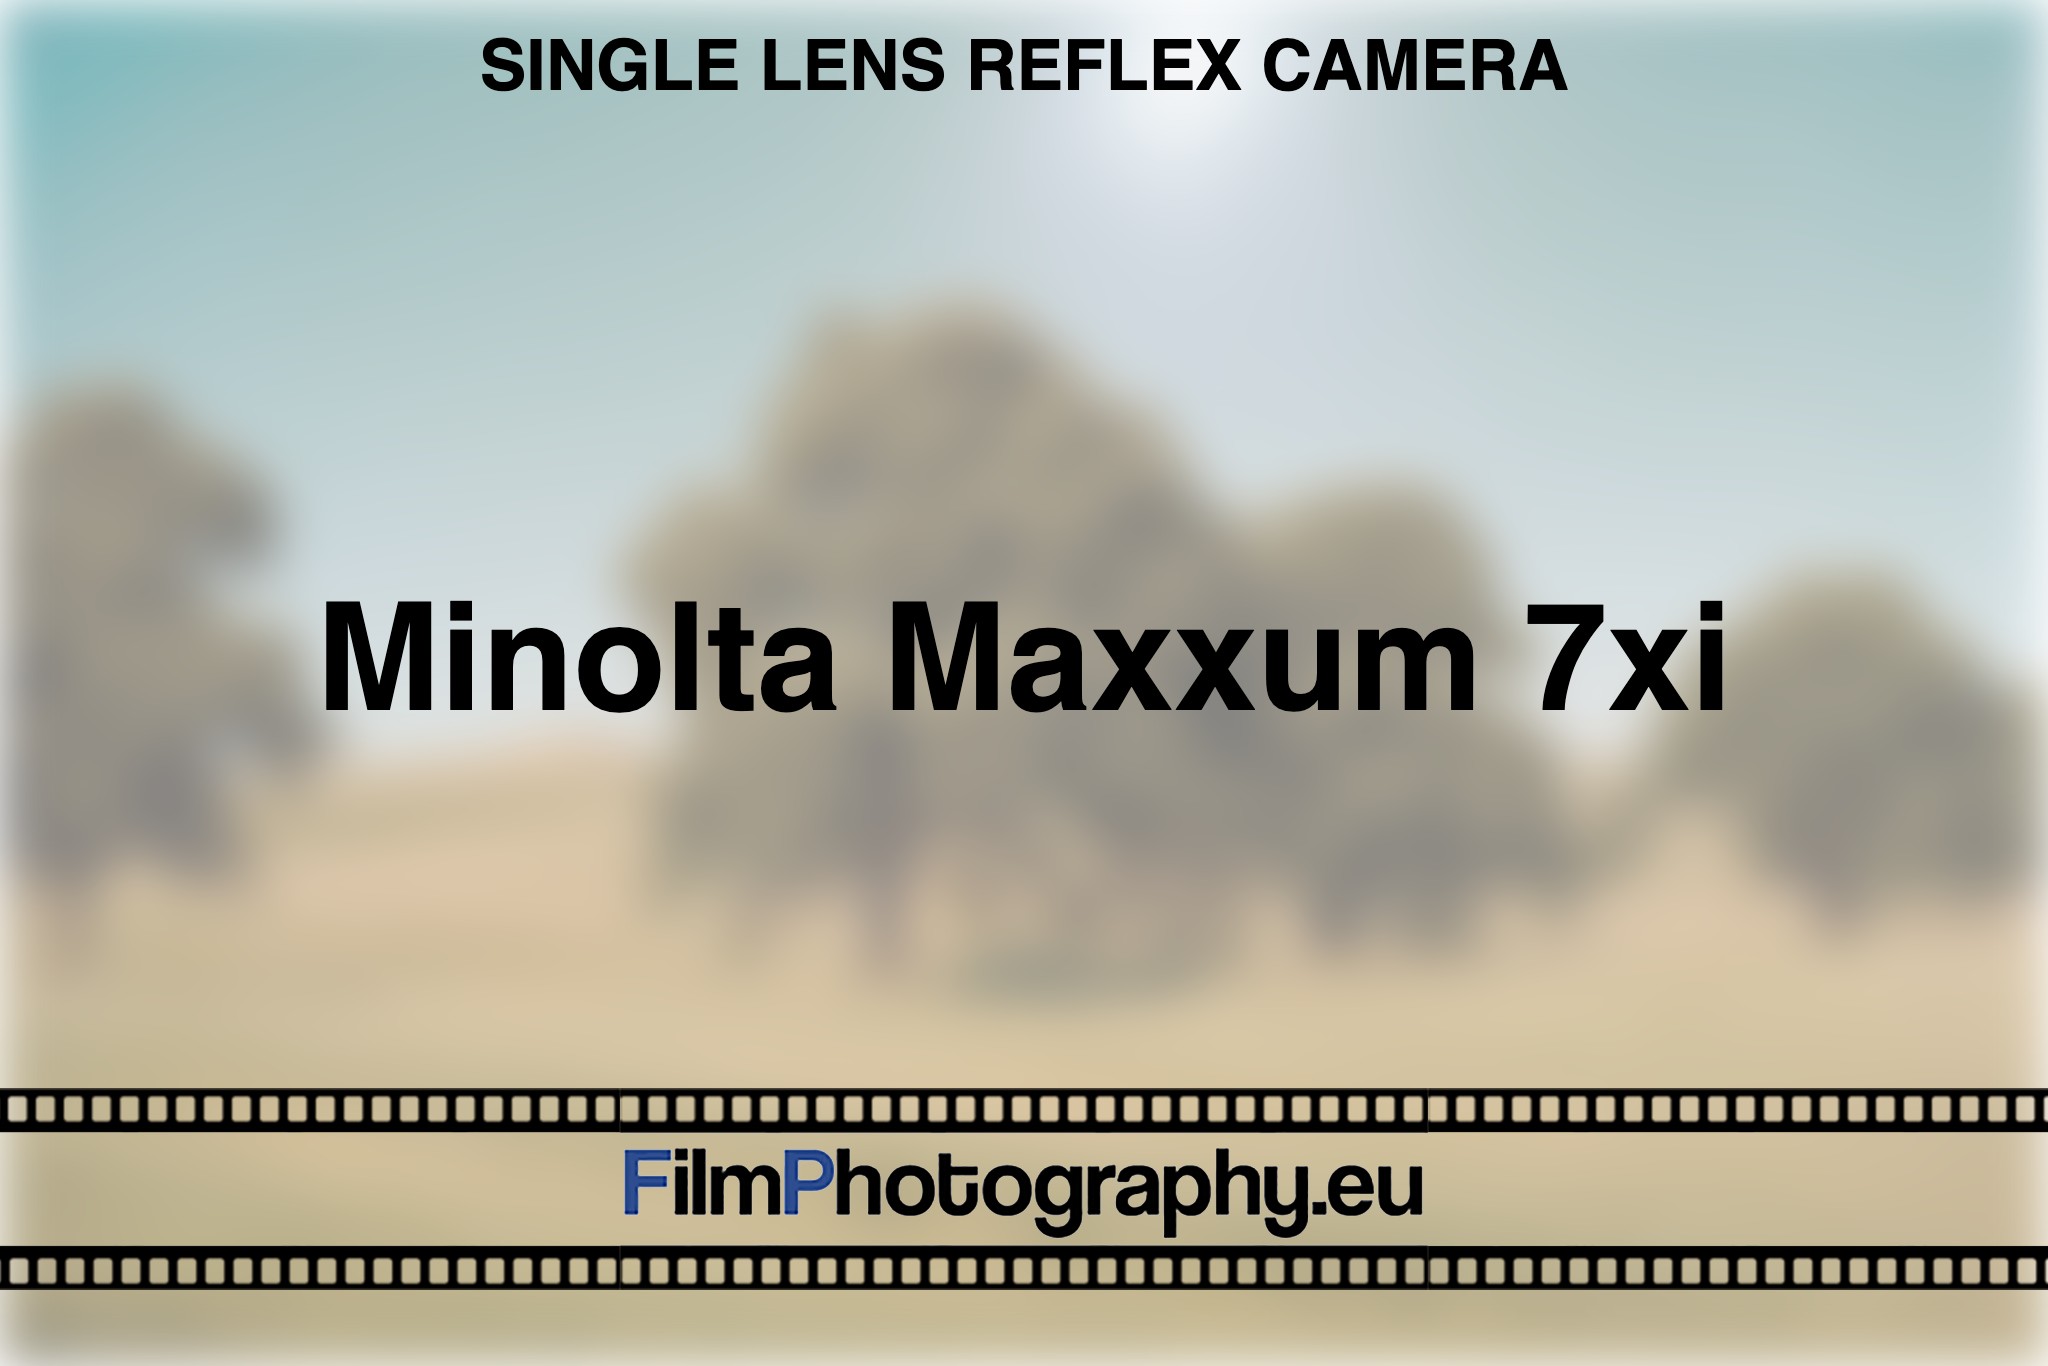 minolta-maxxum-7xi-single-lens-reflex-camera-bnv